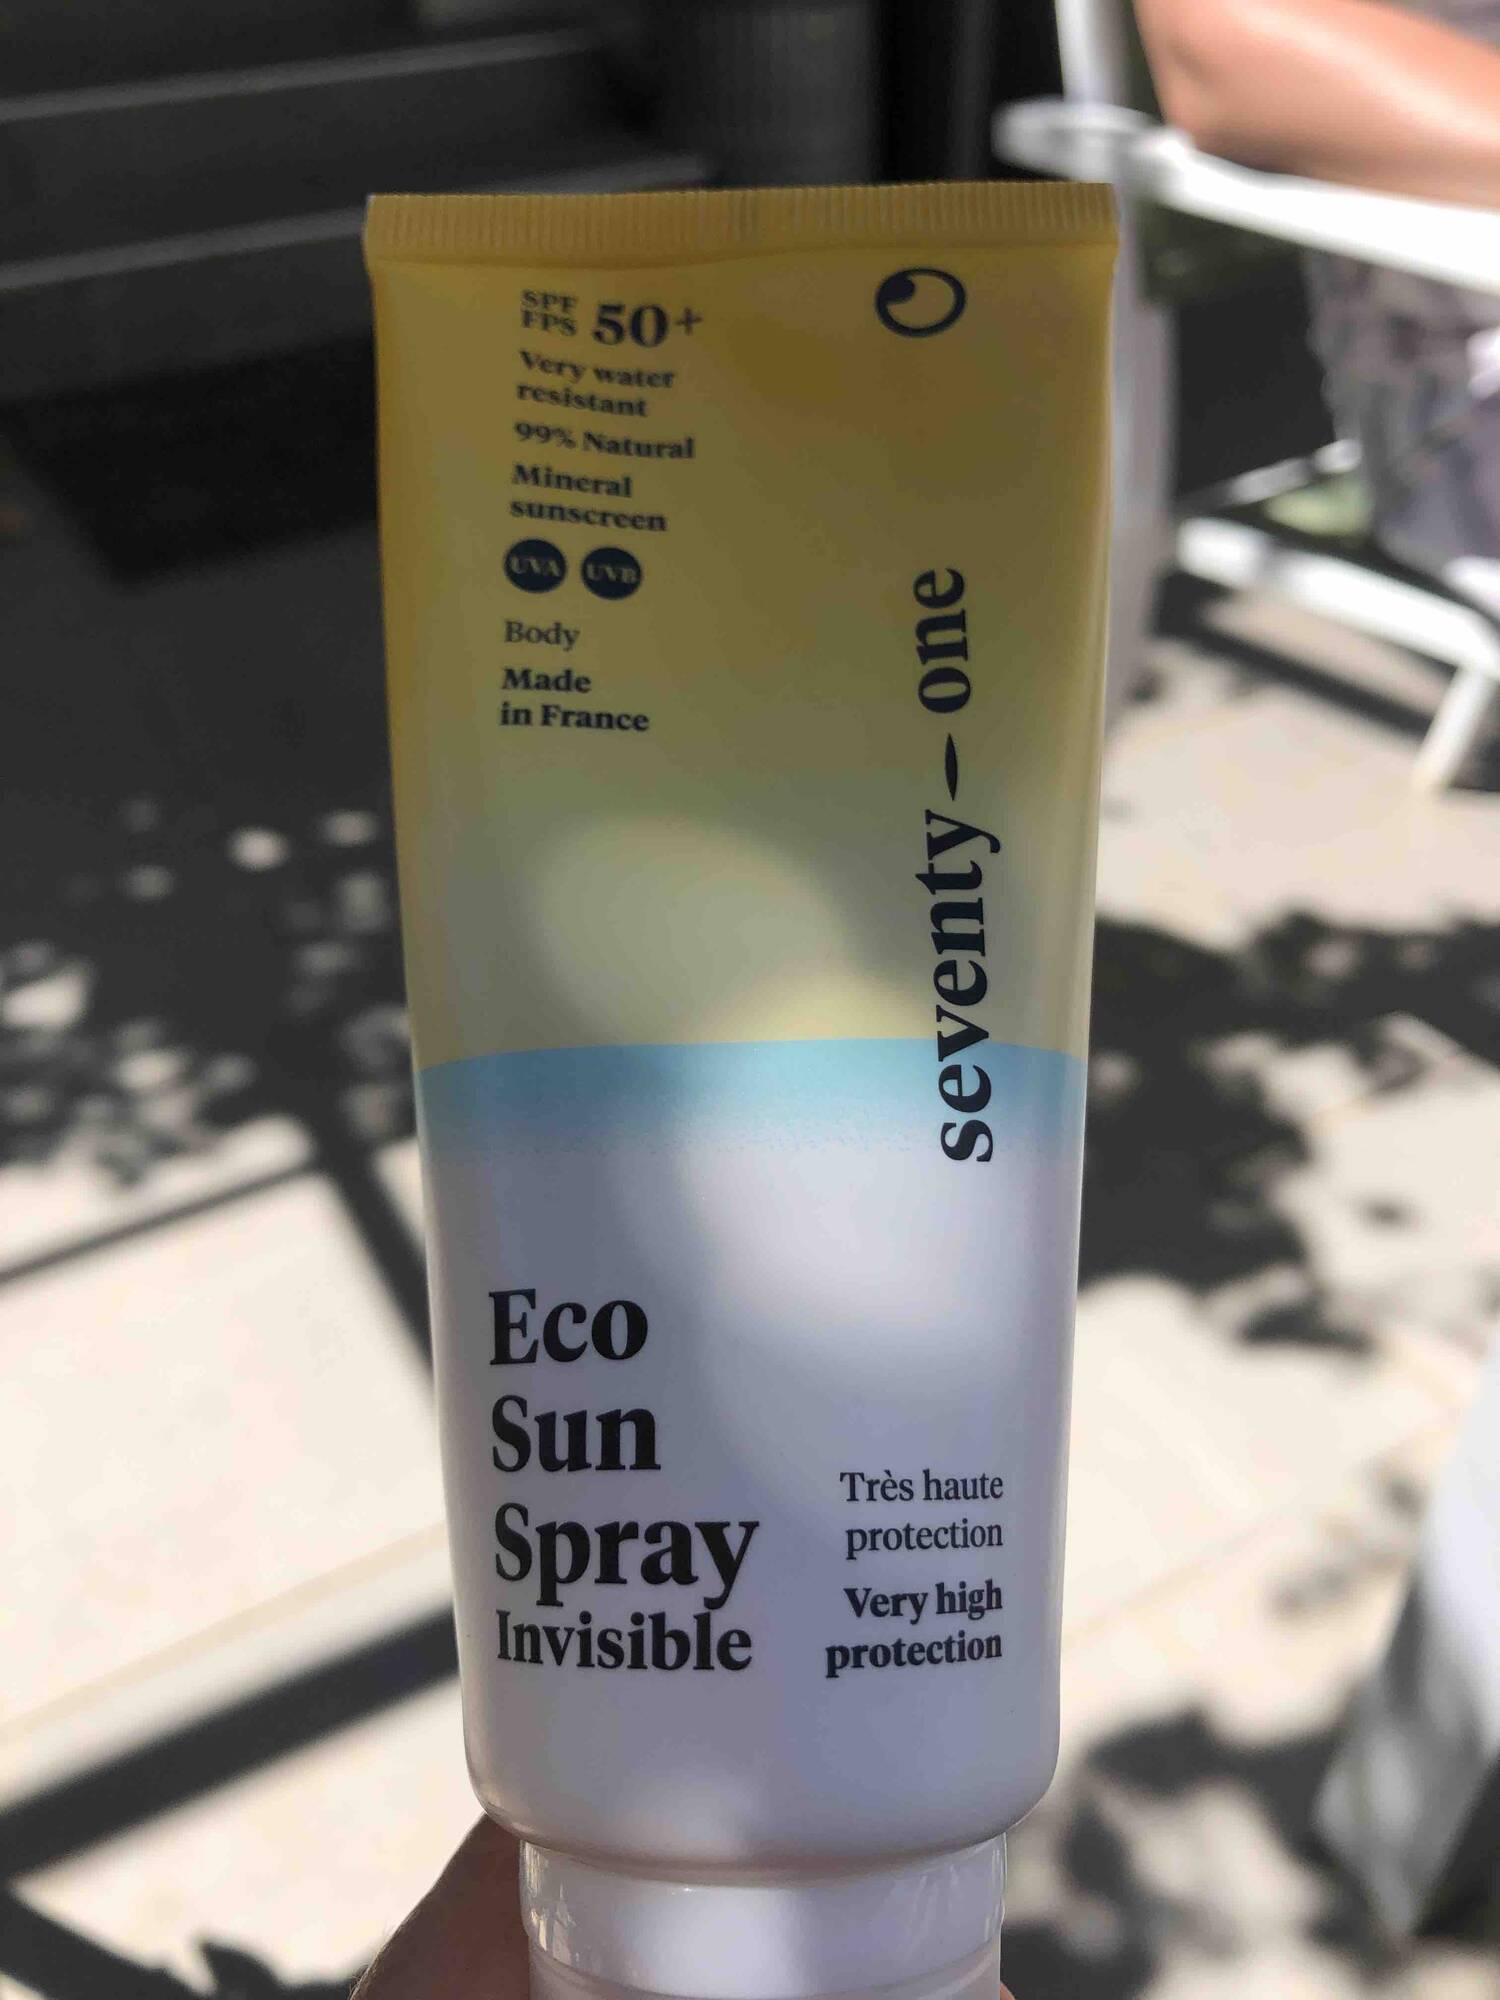 SEVENTY-ONE - Eco sun spray invisible SPF 50+